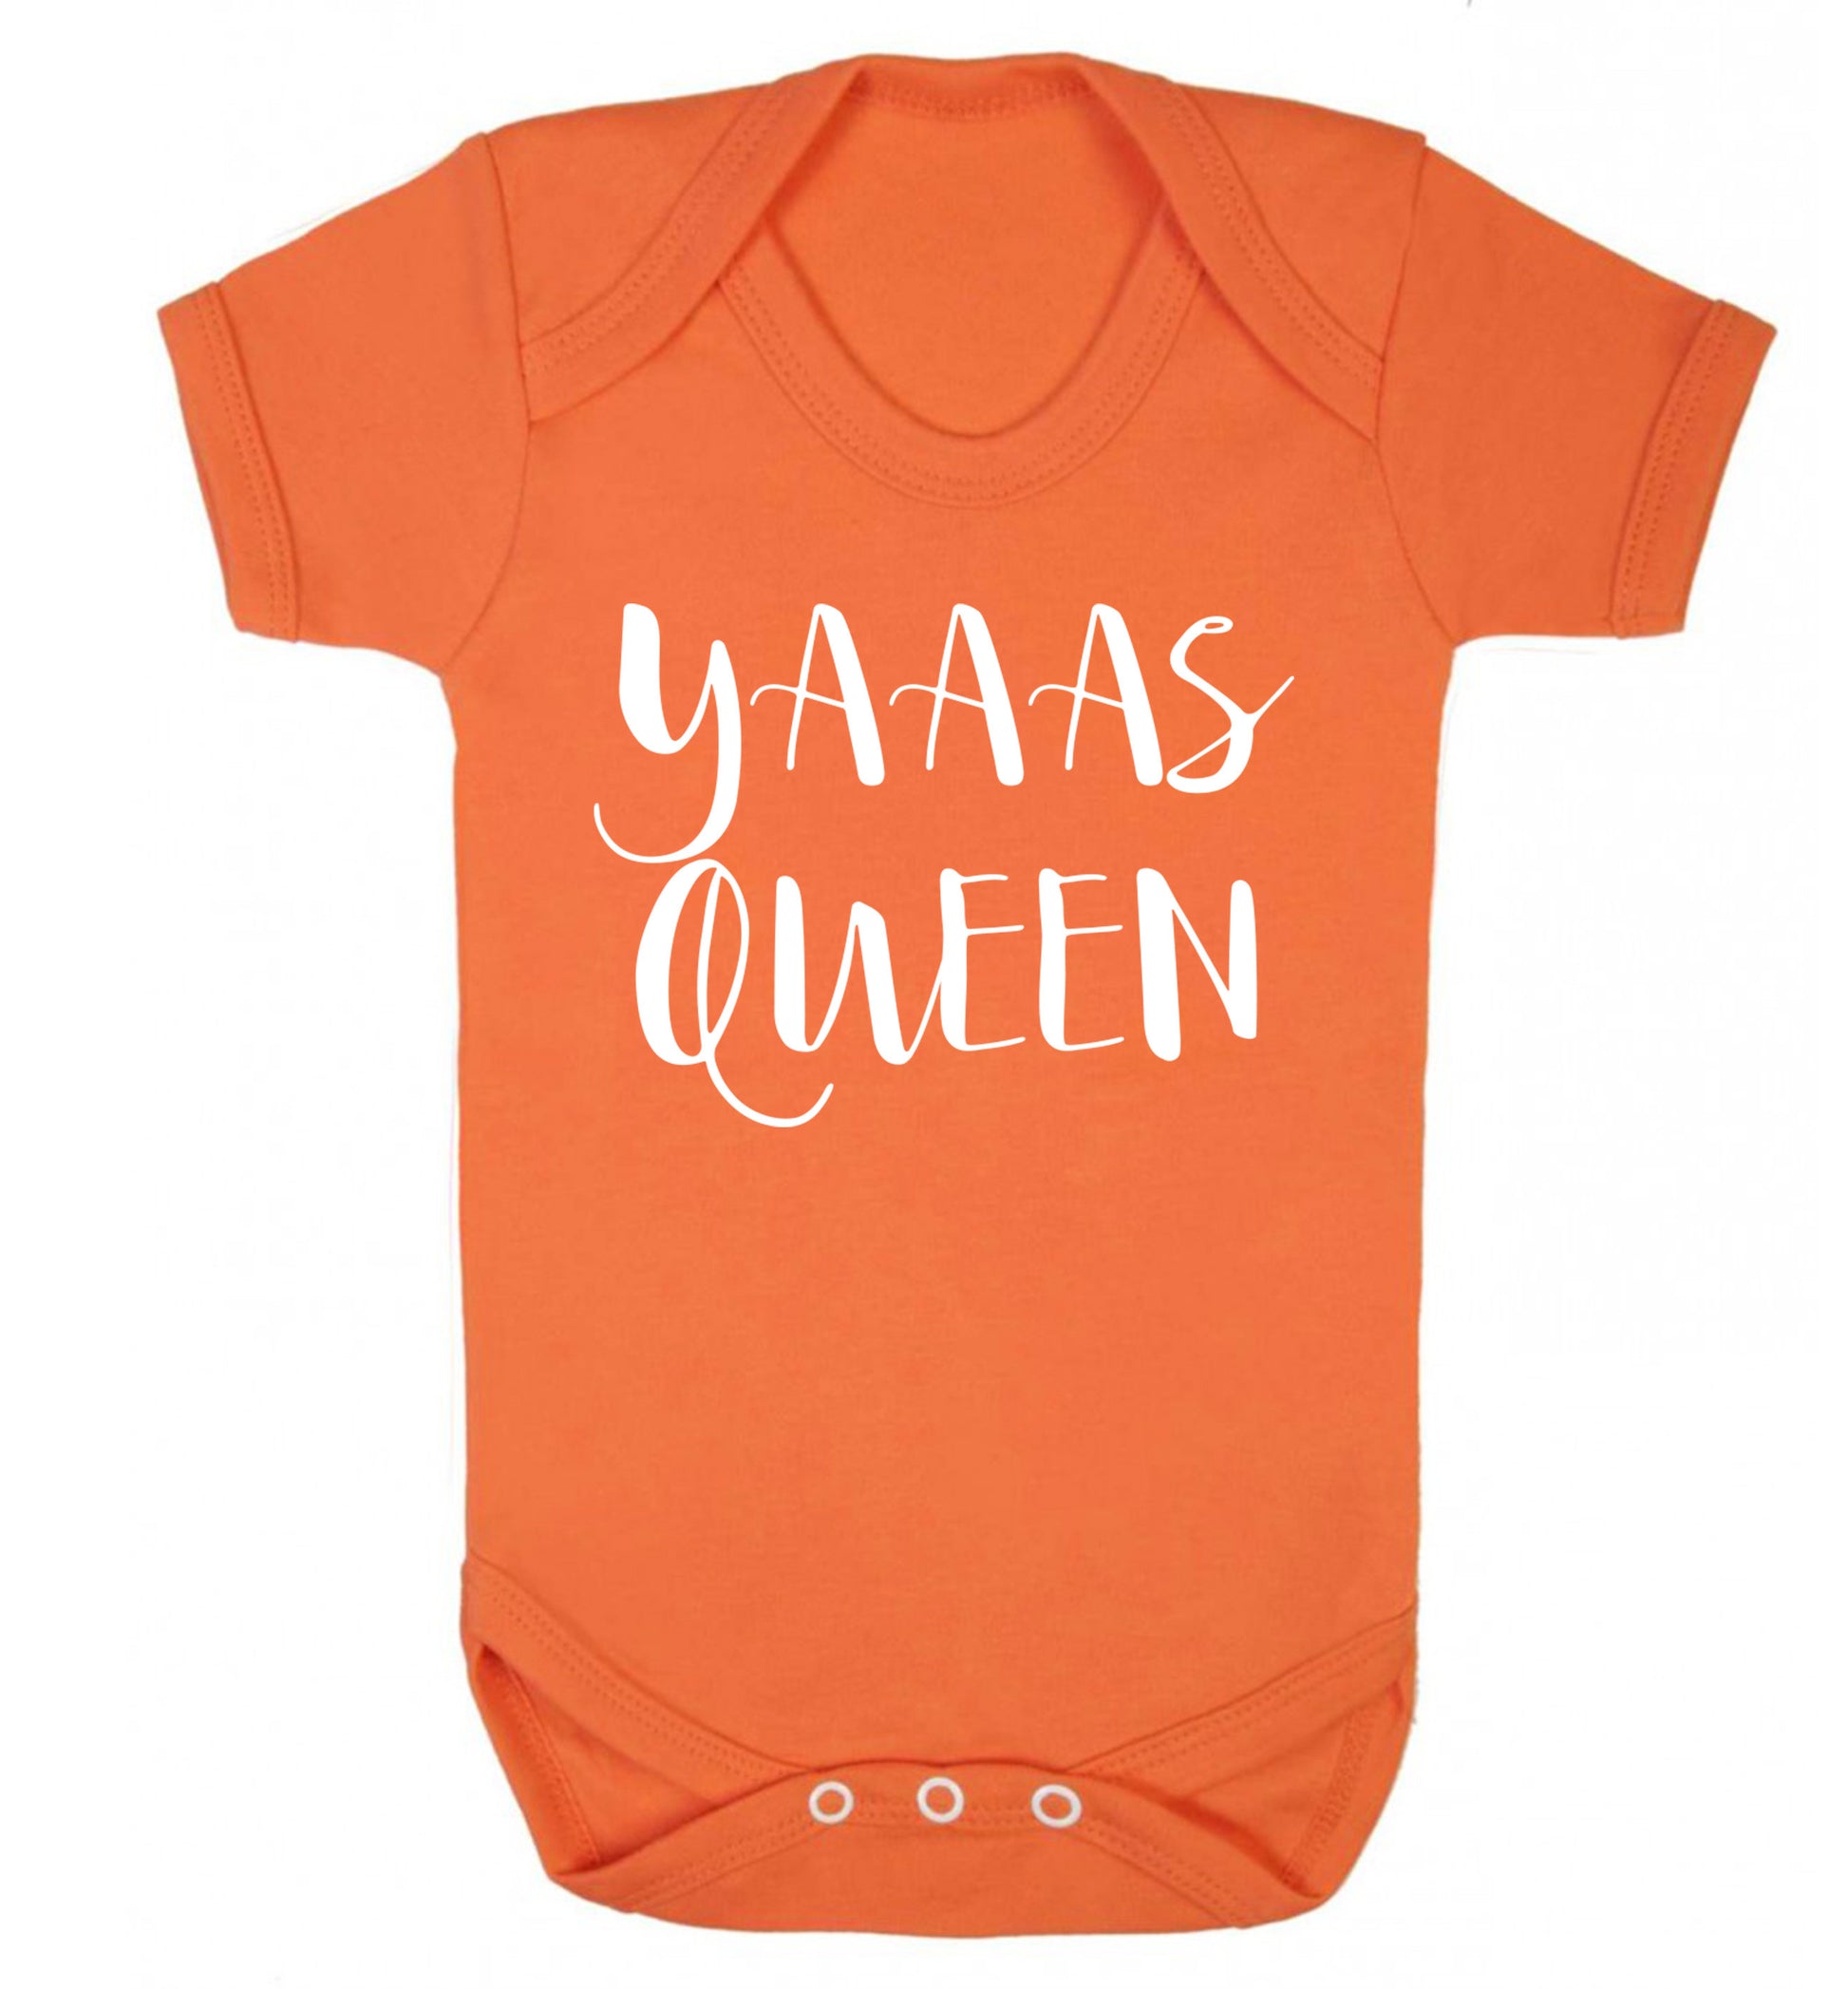 Yas Queen Baby Vest orange 18-24 months